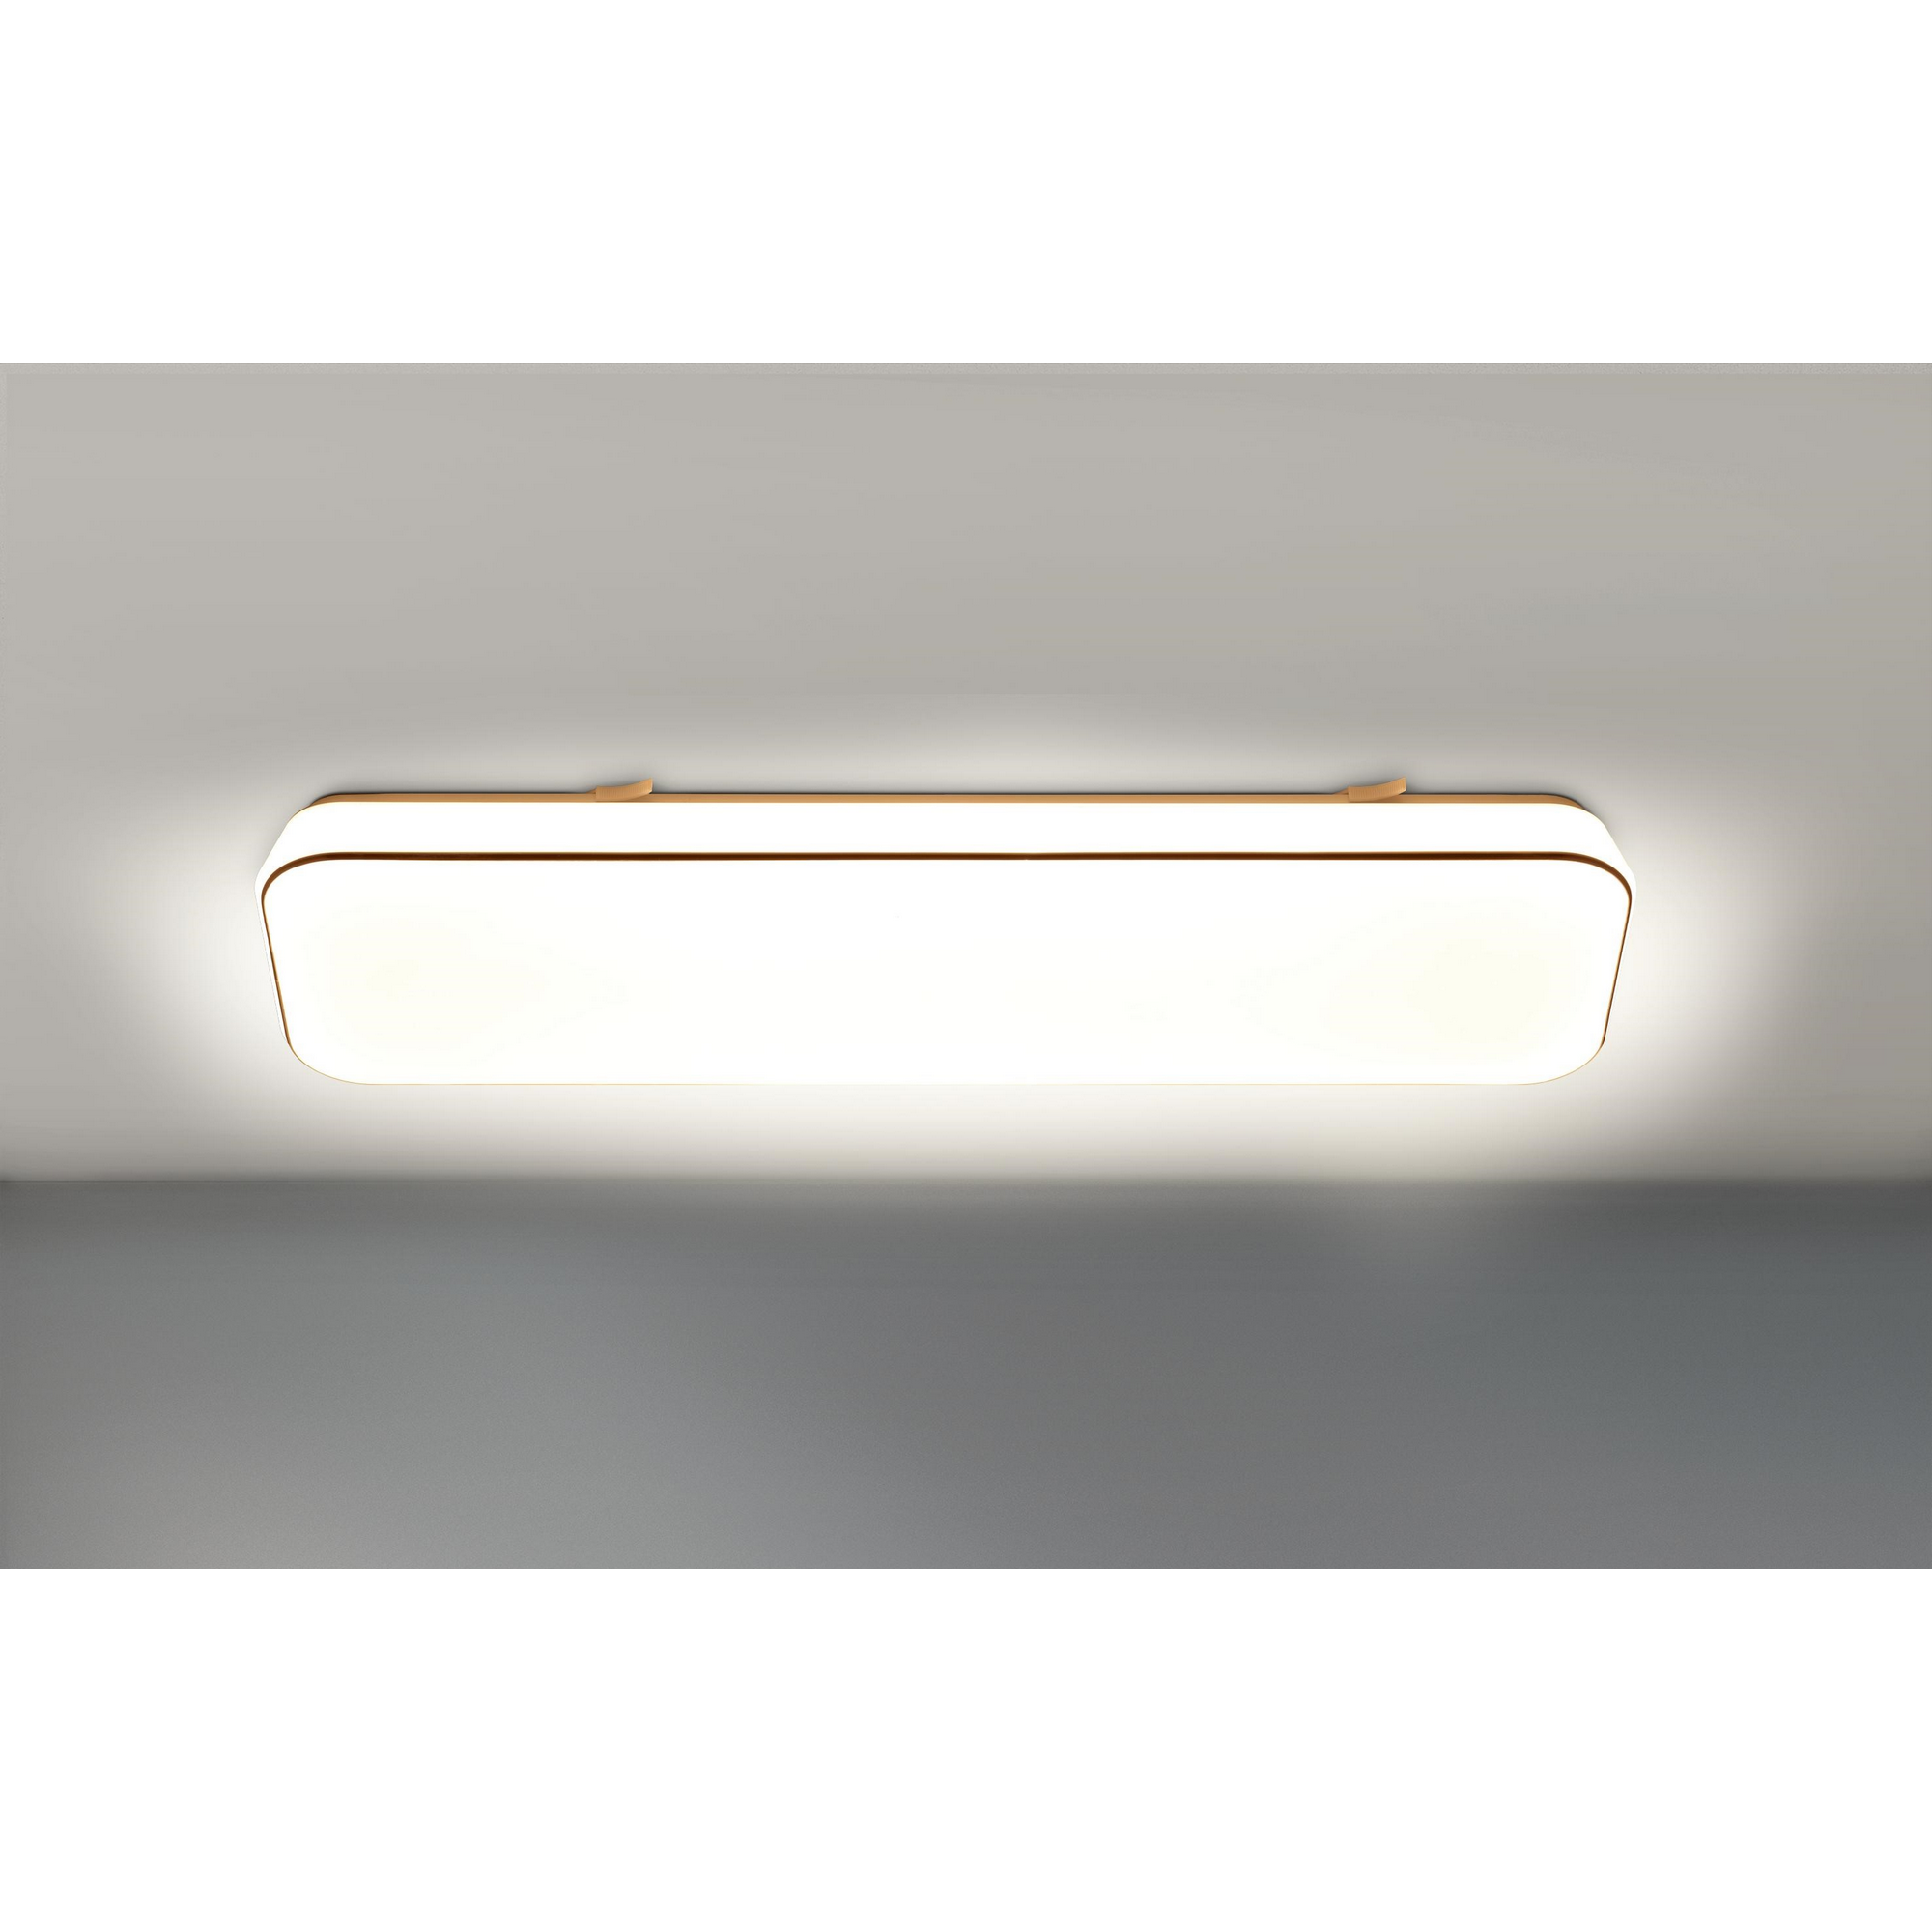 LED-Deckenleuchte 'Square' weiß 60,5 x 18,5 x 6 cm, mit Sternen-Effekt 23 W, 2800 lm + product picture